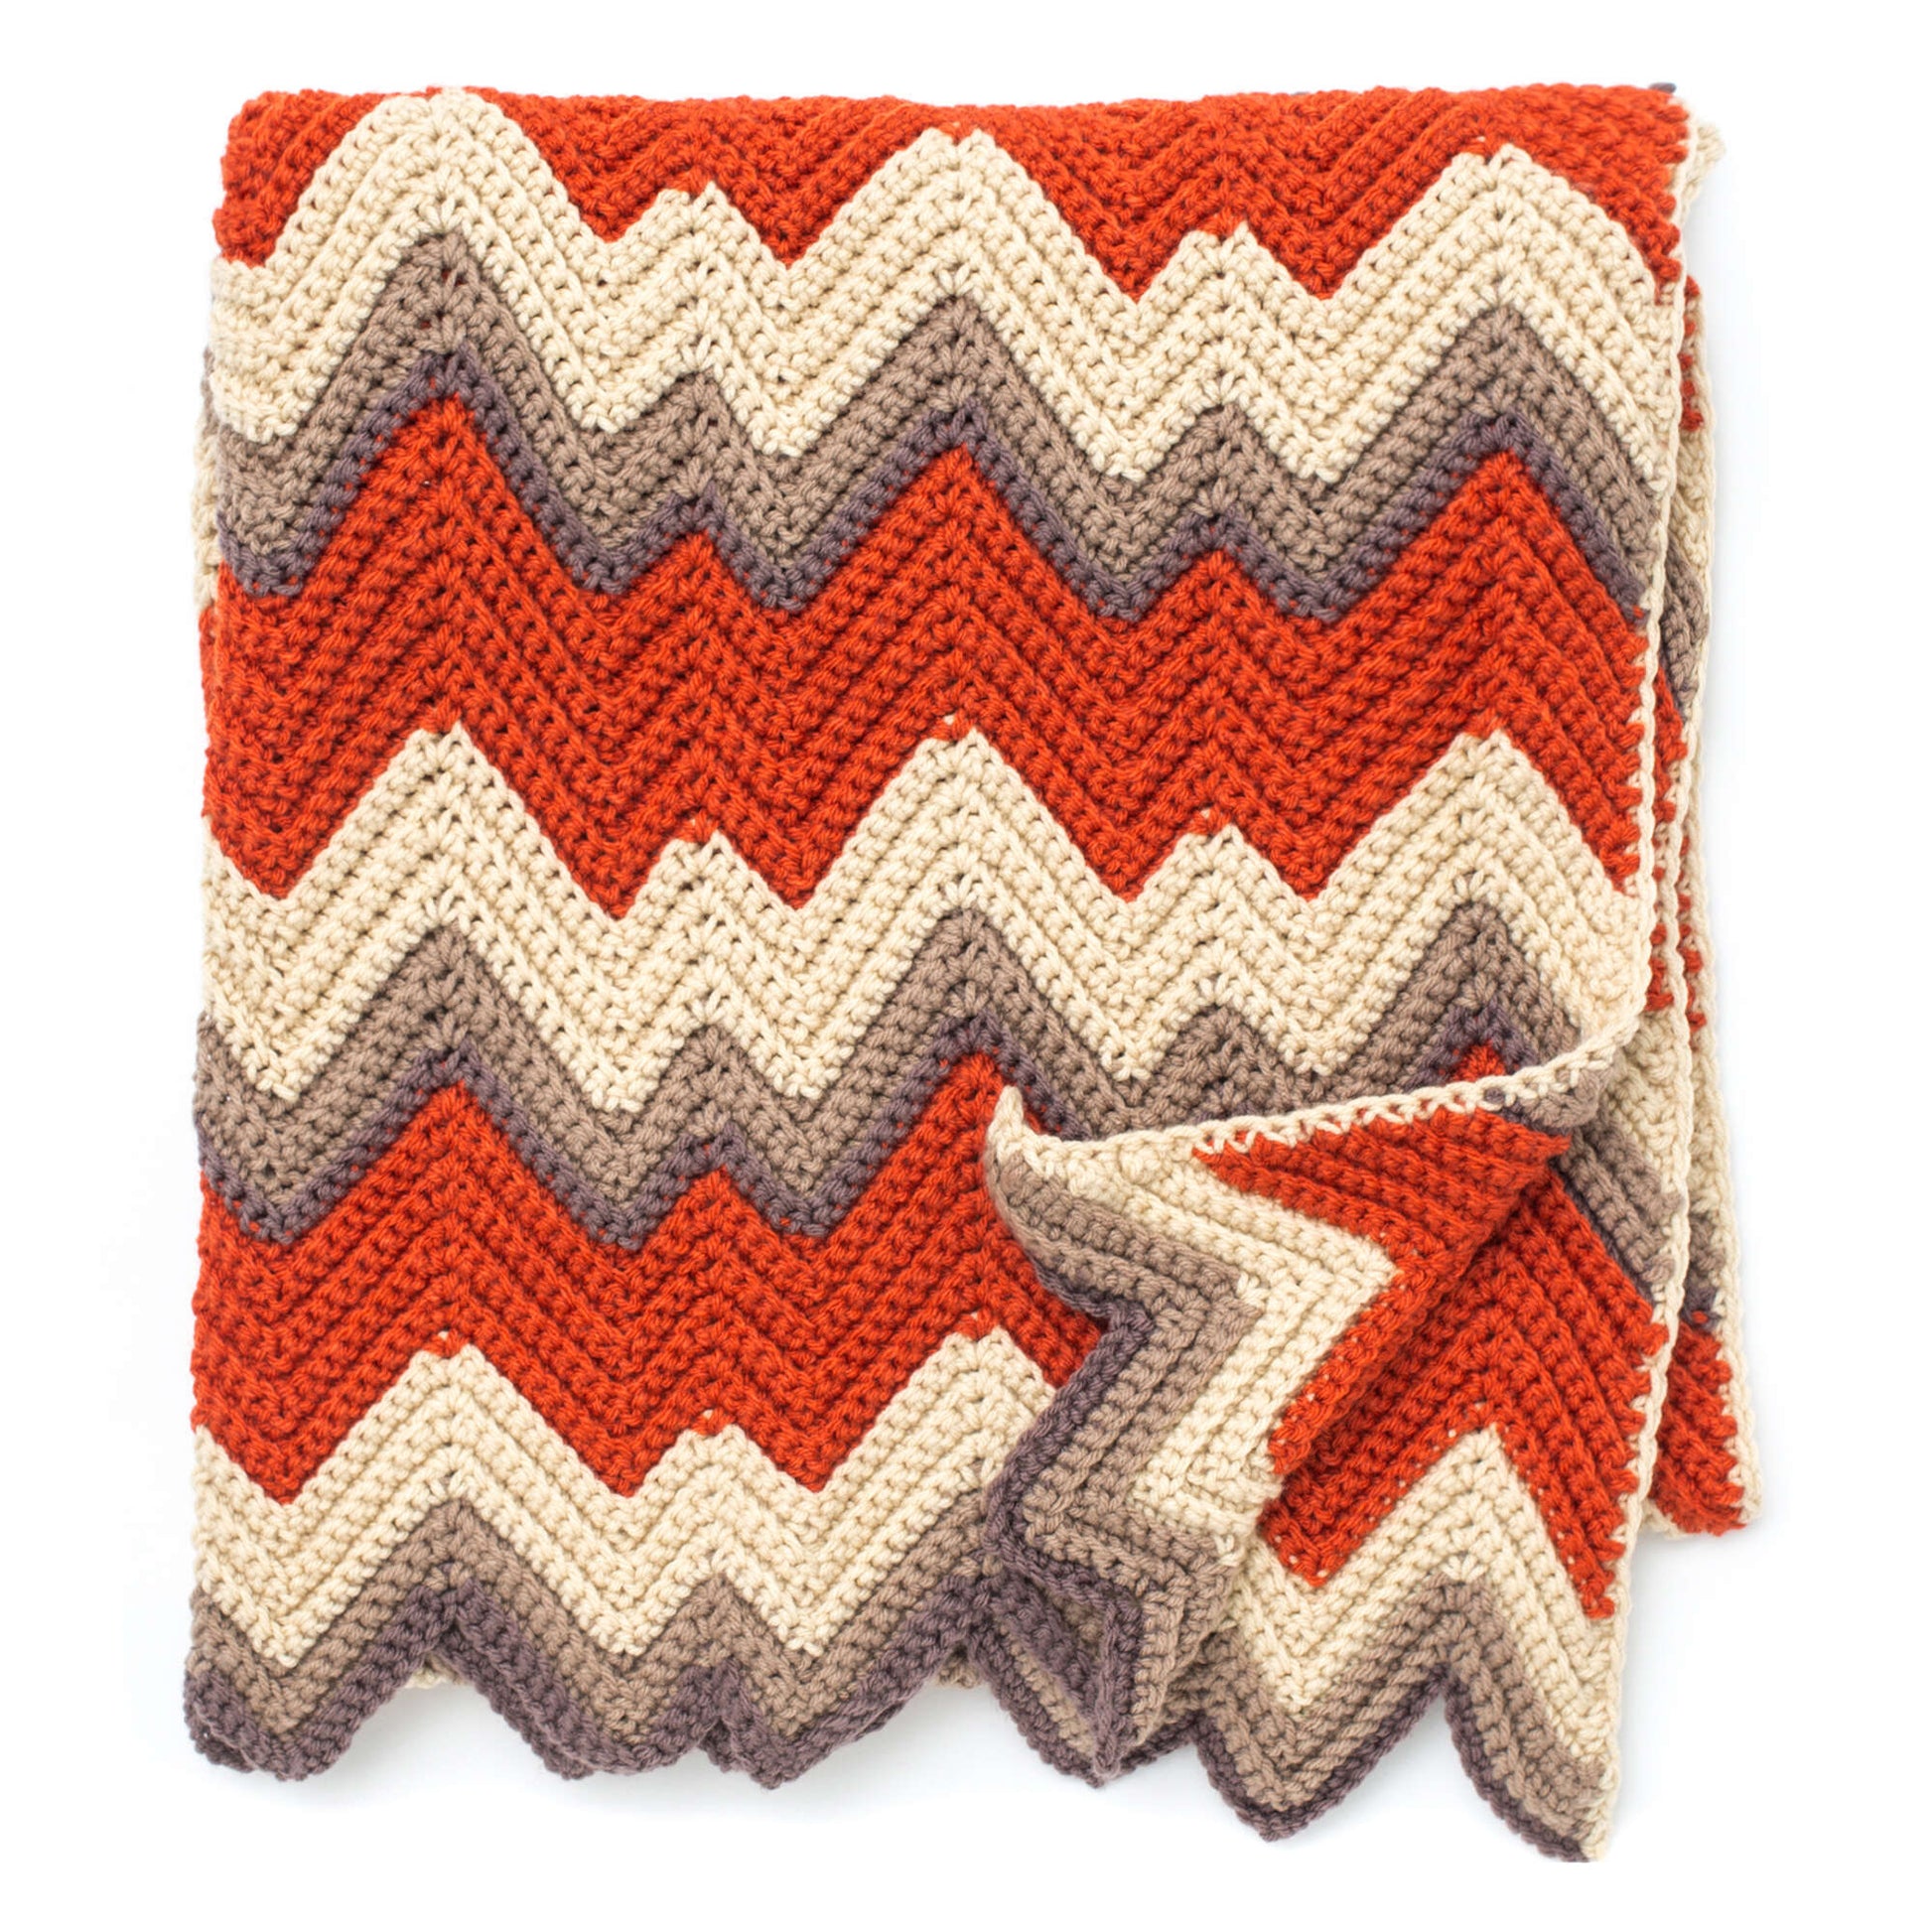 Free Bernat Zig-Zag Afghan Crochet Pattern